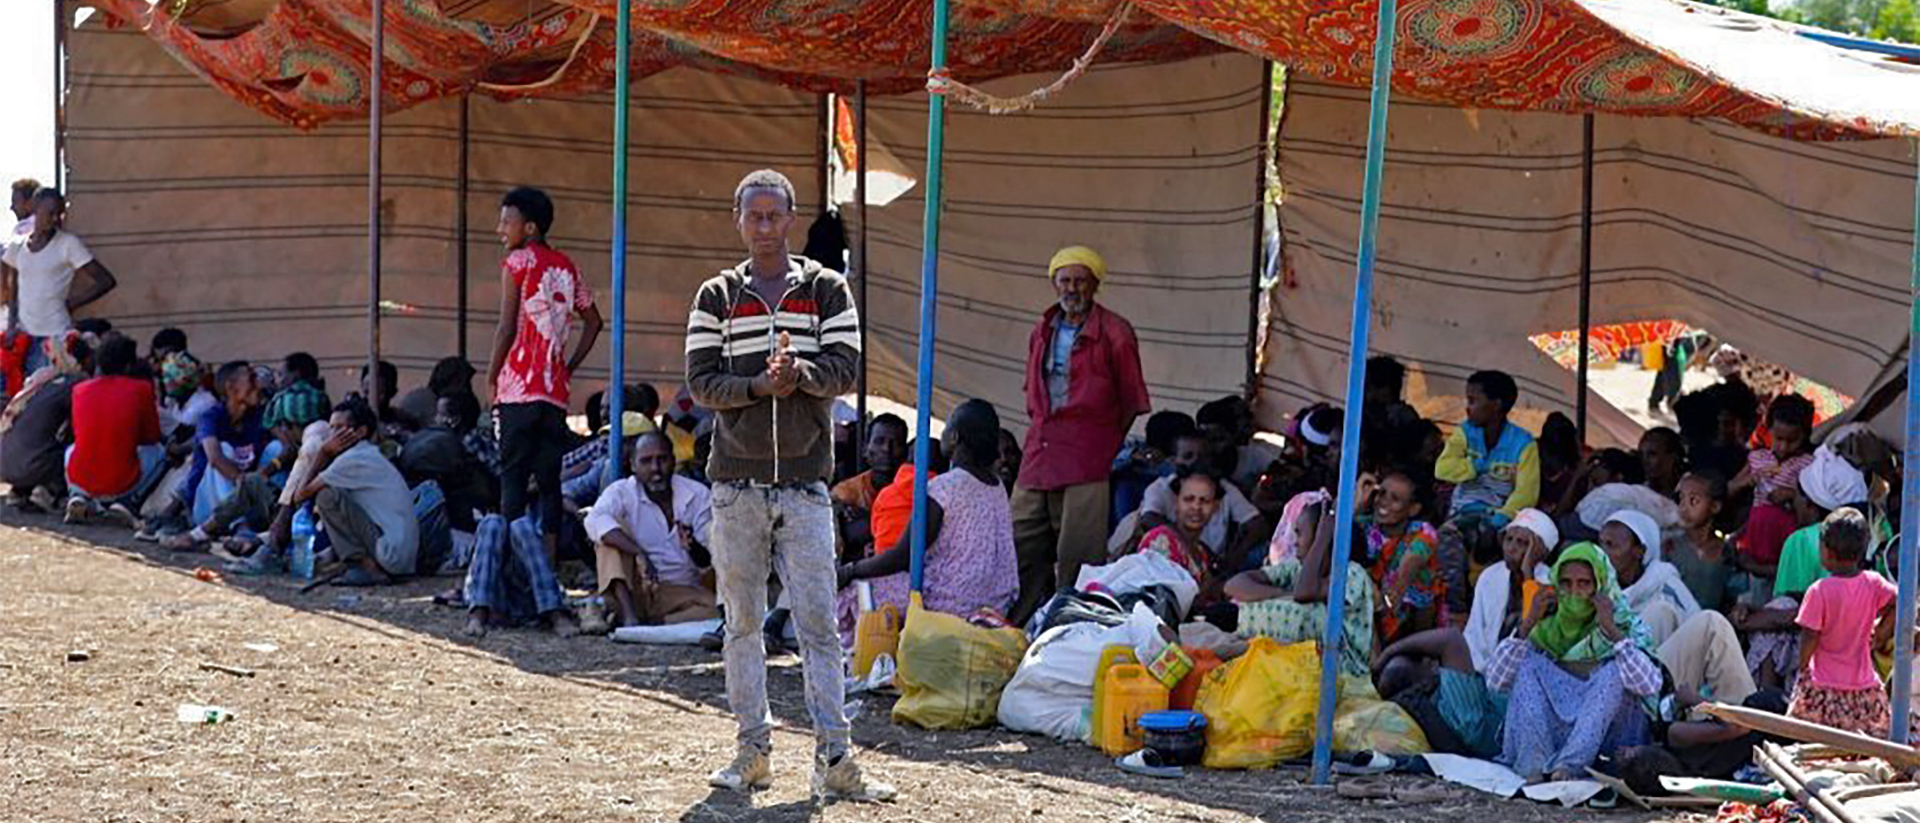 Les Tigrées fuient leurs pays pour se réfugier dans zones plus sûres, notamment au Soudan voisin | © AMECEA